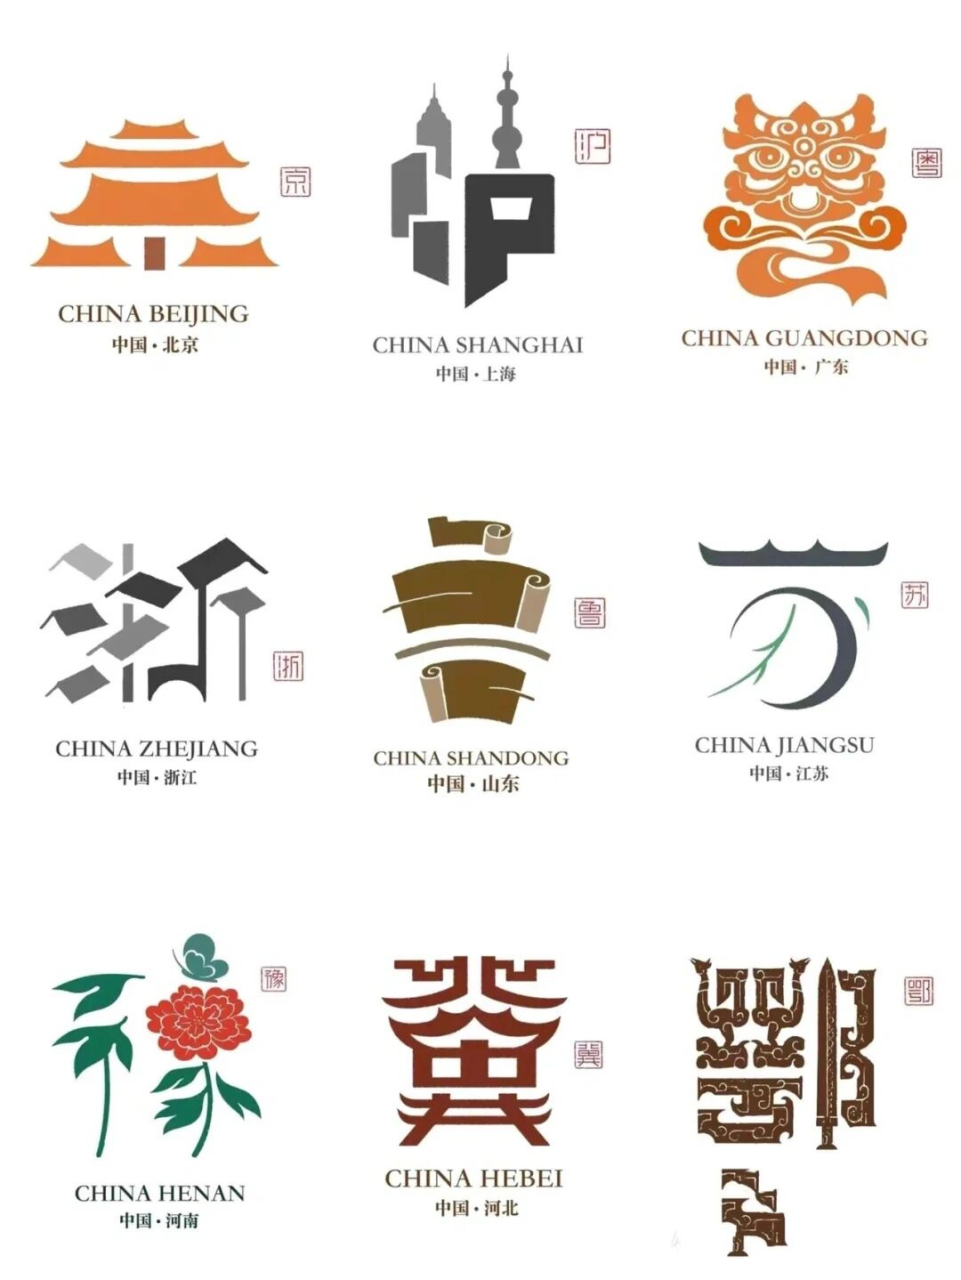 城市logo 石昌鸿:浓郁的中国元素的城市标识